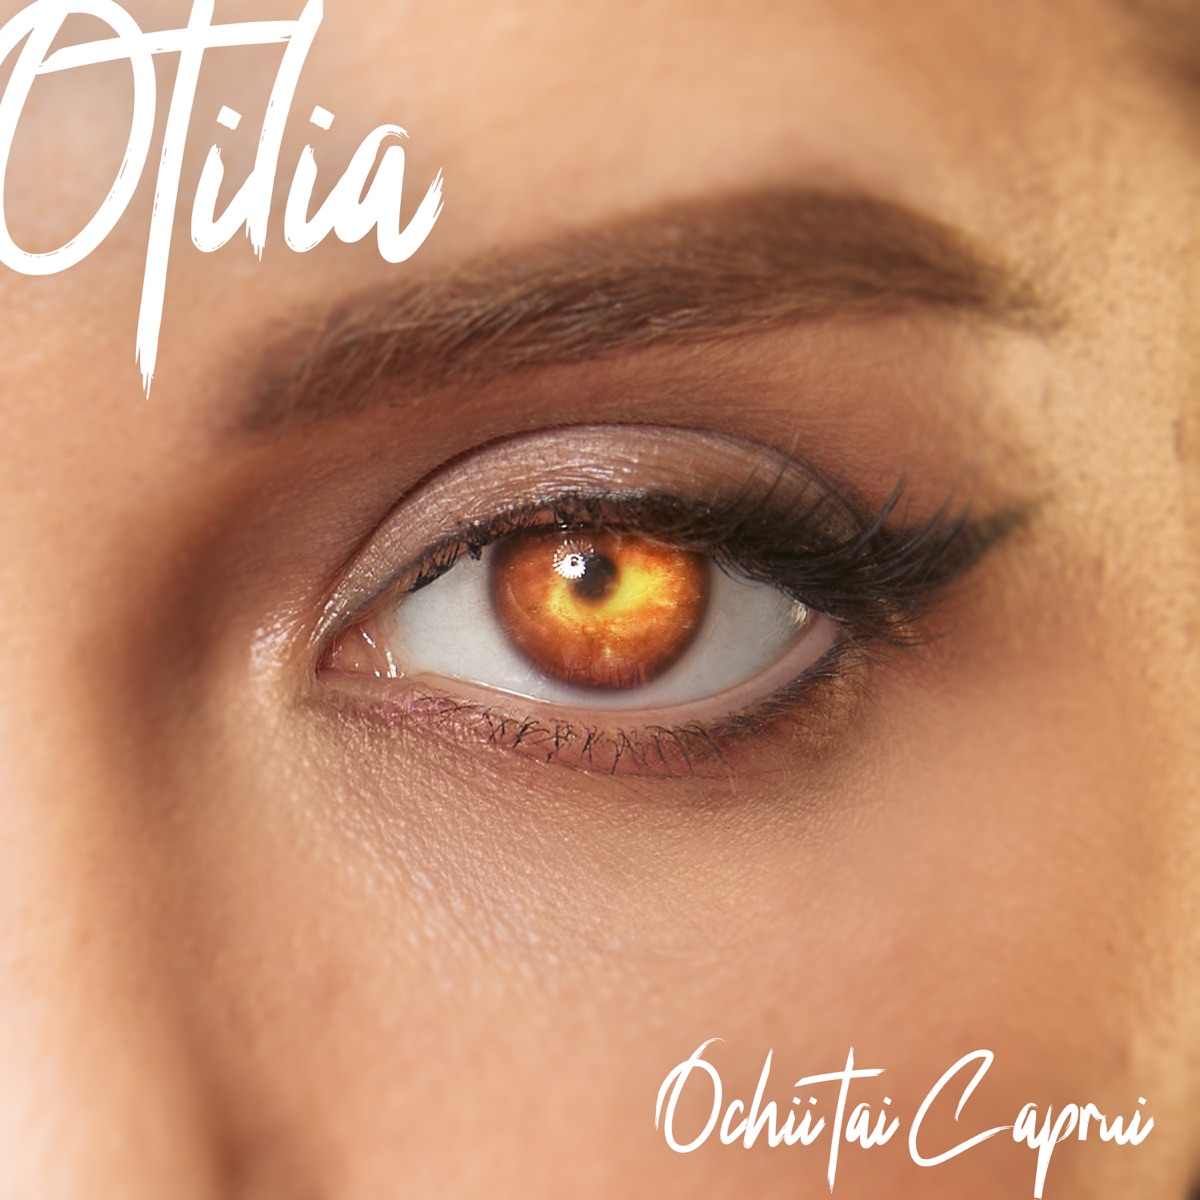 Otilia — Ochii Tăi Căprui cover artwork